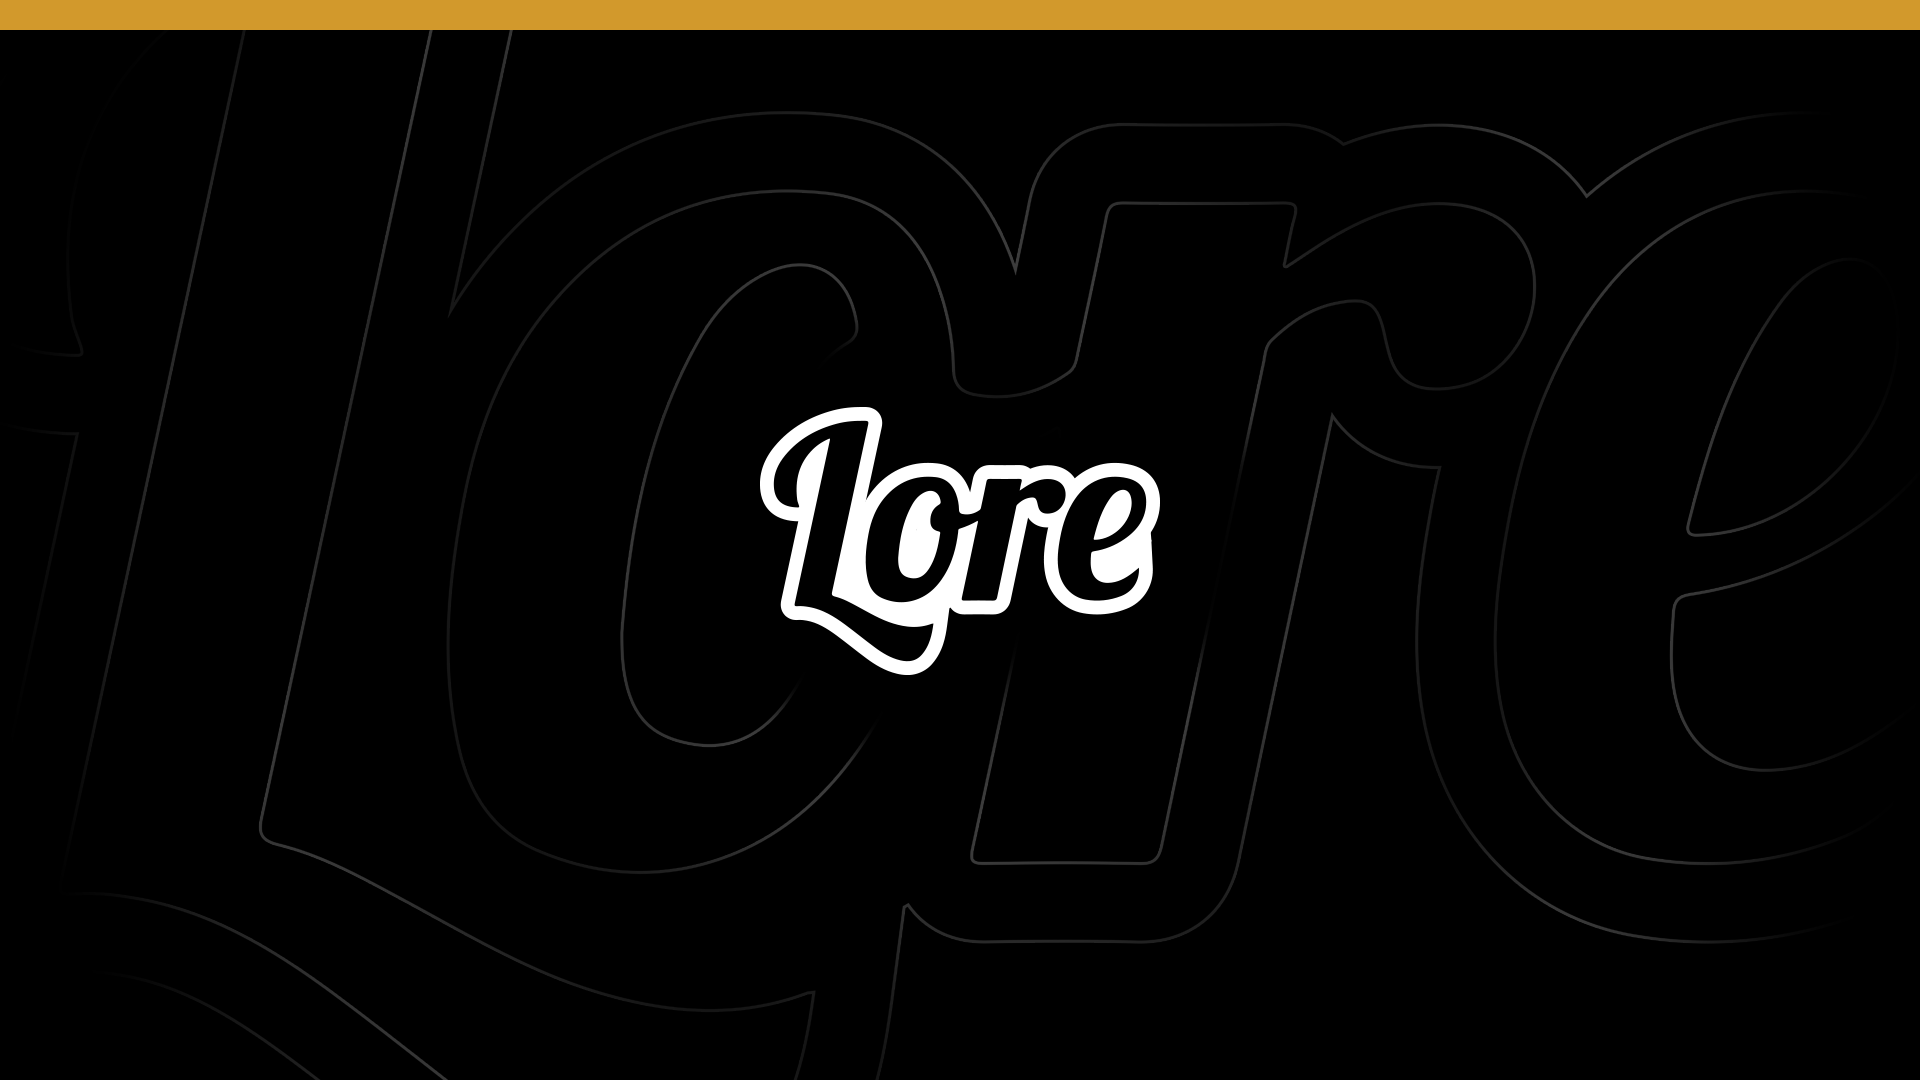 Lore Gaming